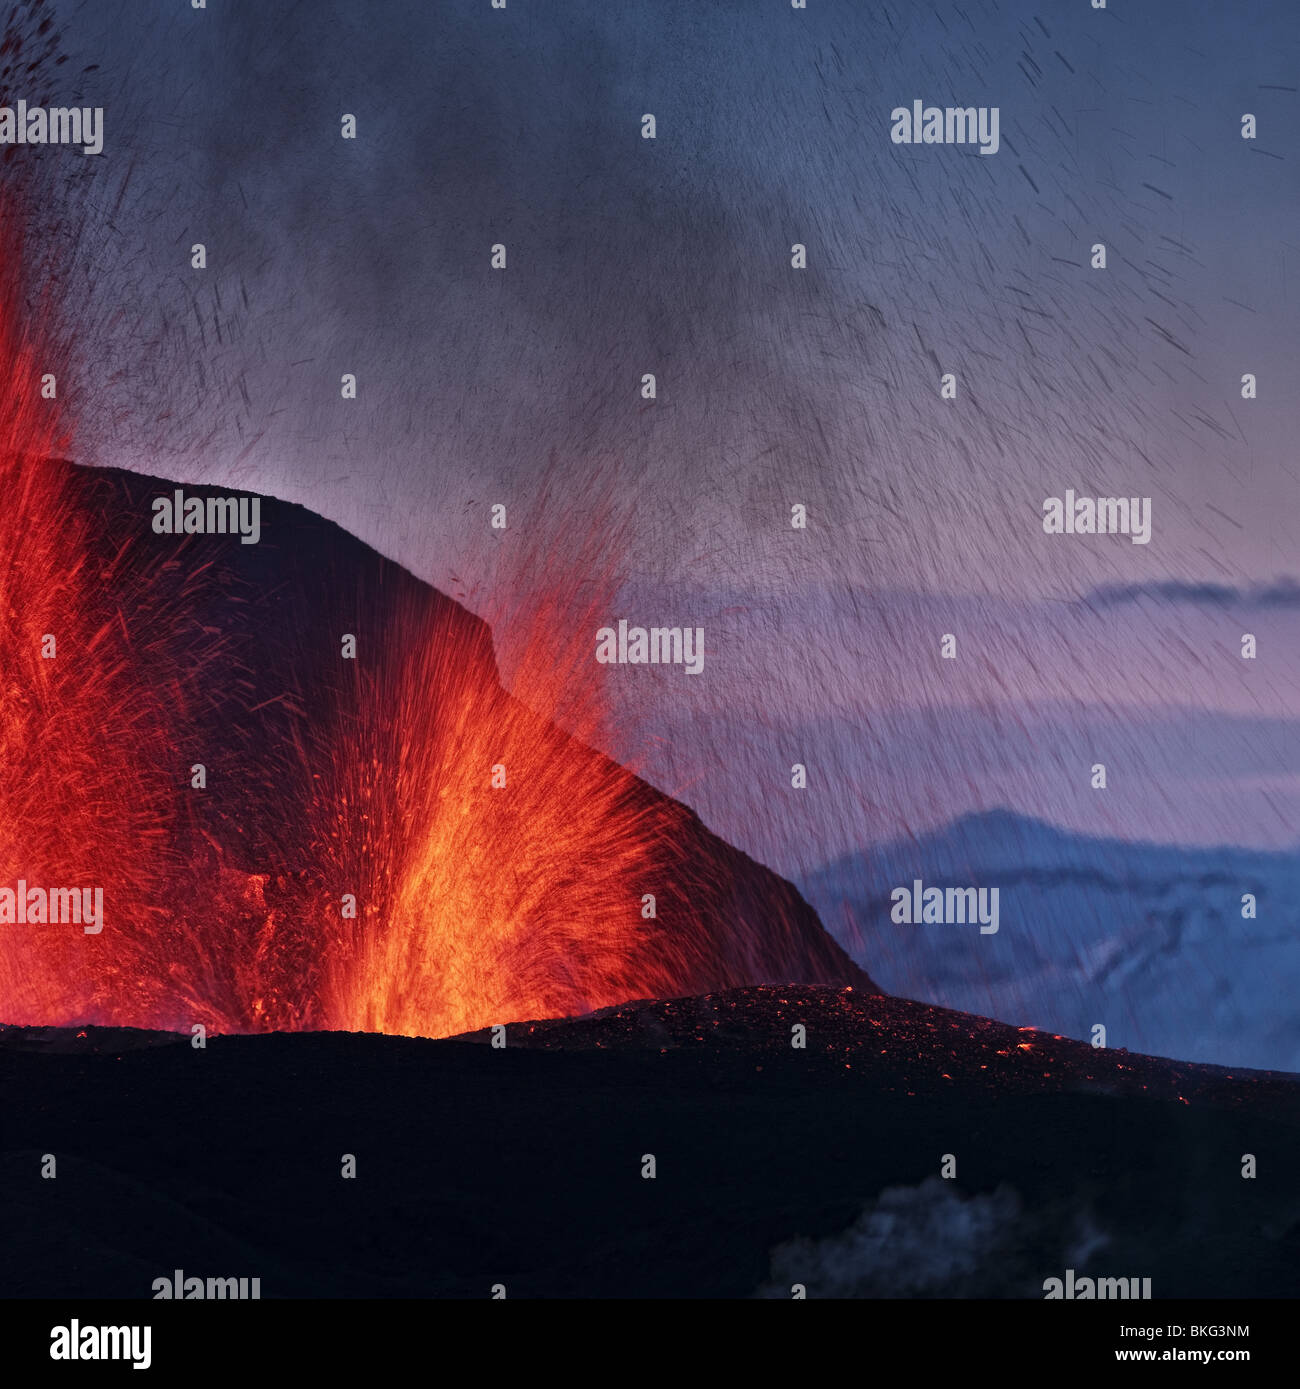 Lavafontänen Vulkan Eruption am Fimmvörðuháls, einem Bergrücken zwischen Gletscher Eyjafjallajökull und Mýrdalsjökull, Island Stockfoto